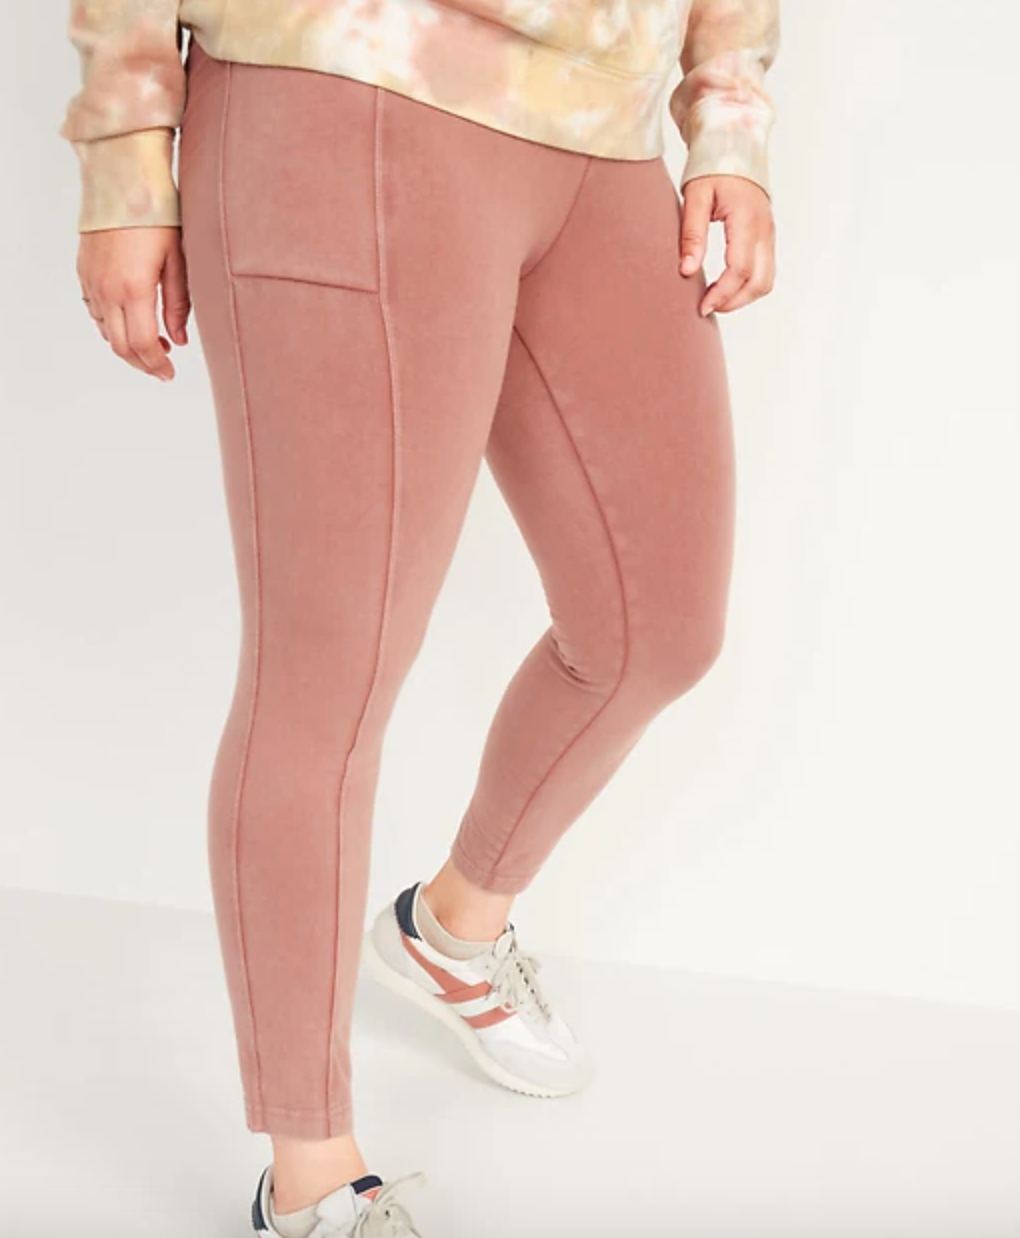 High-waisted Garment-Dyed Side-Pocket 7/8-length leggings